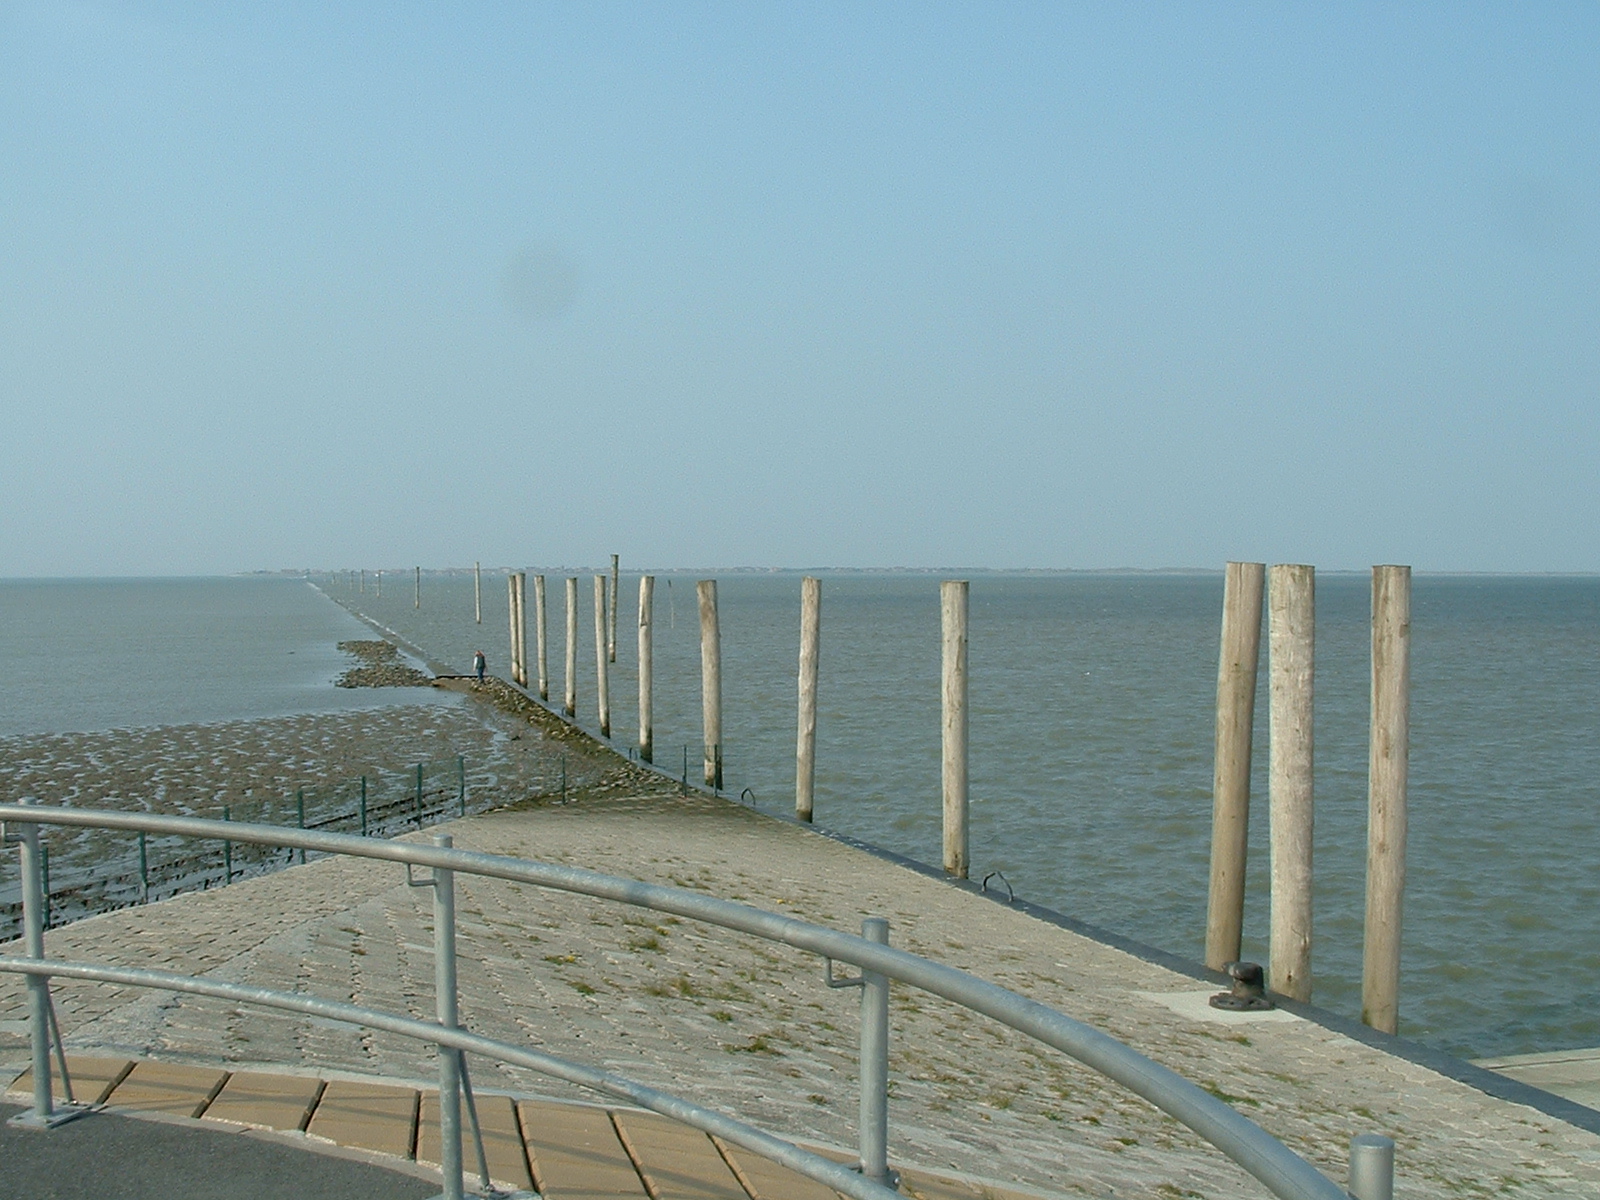 Reederei Baltrum-Linie in Nessmersiel - Flut, wie schön, man kann das Meer sehen!